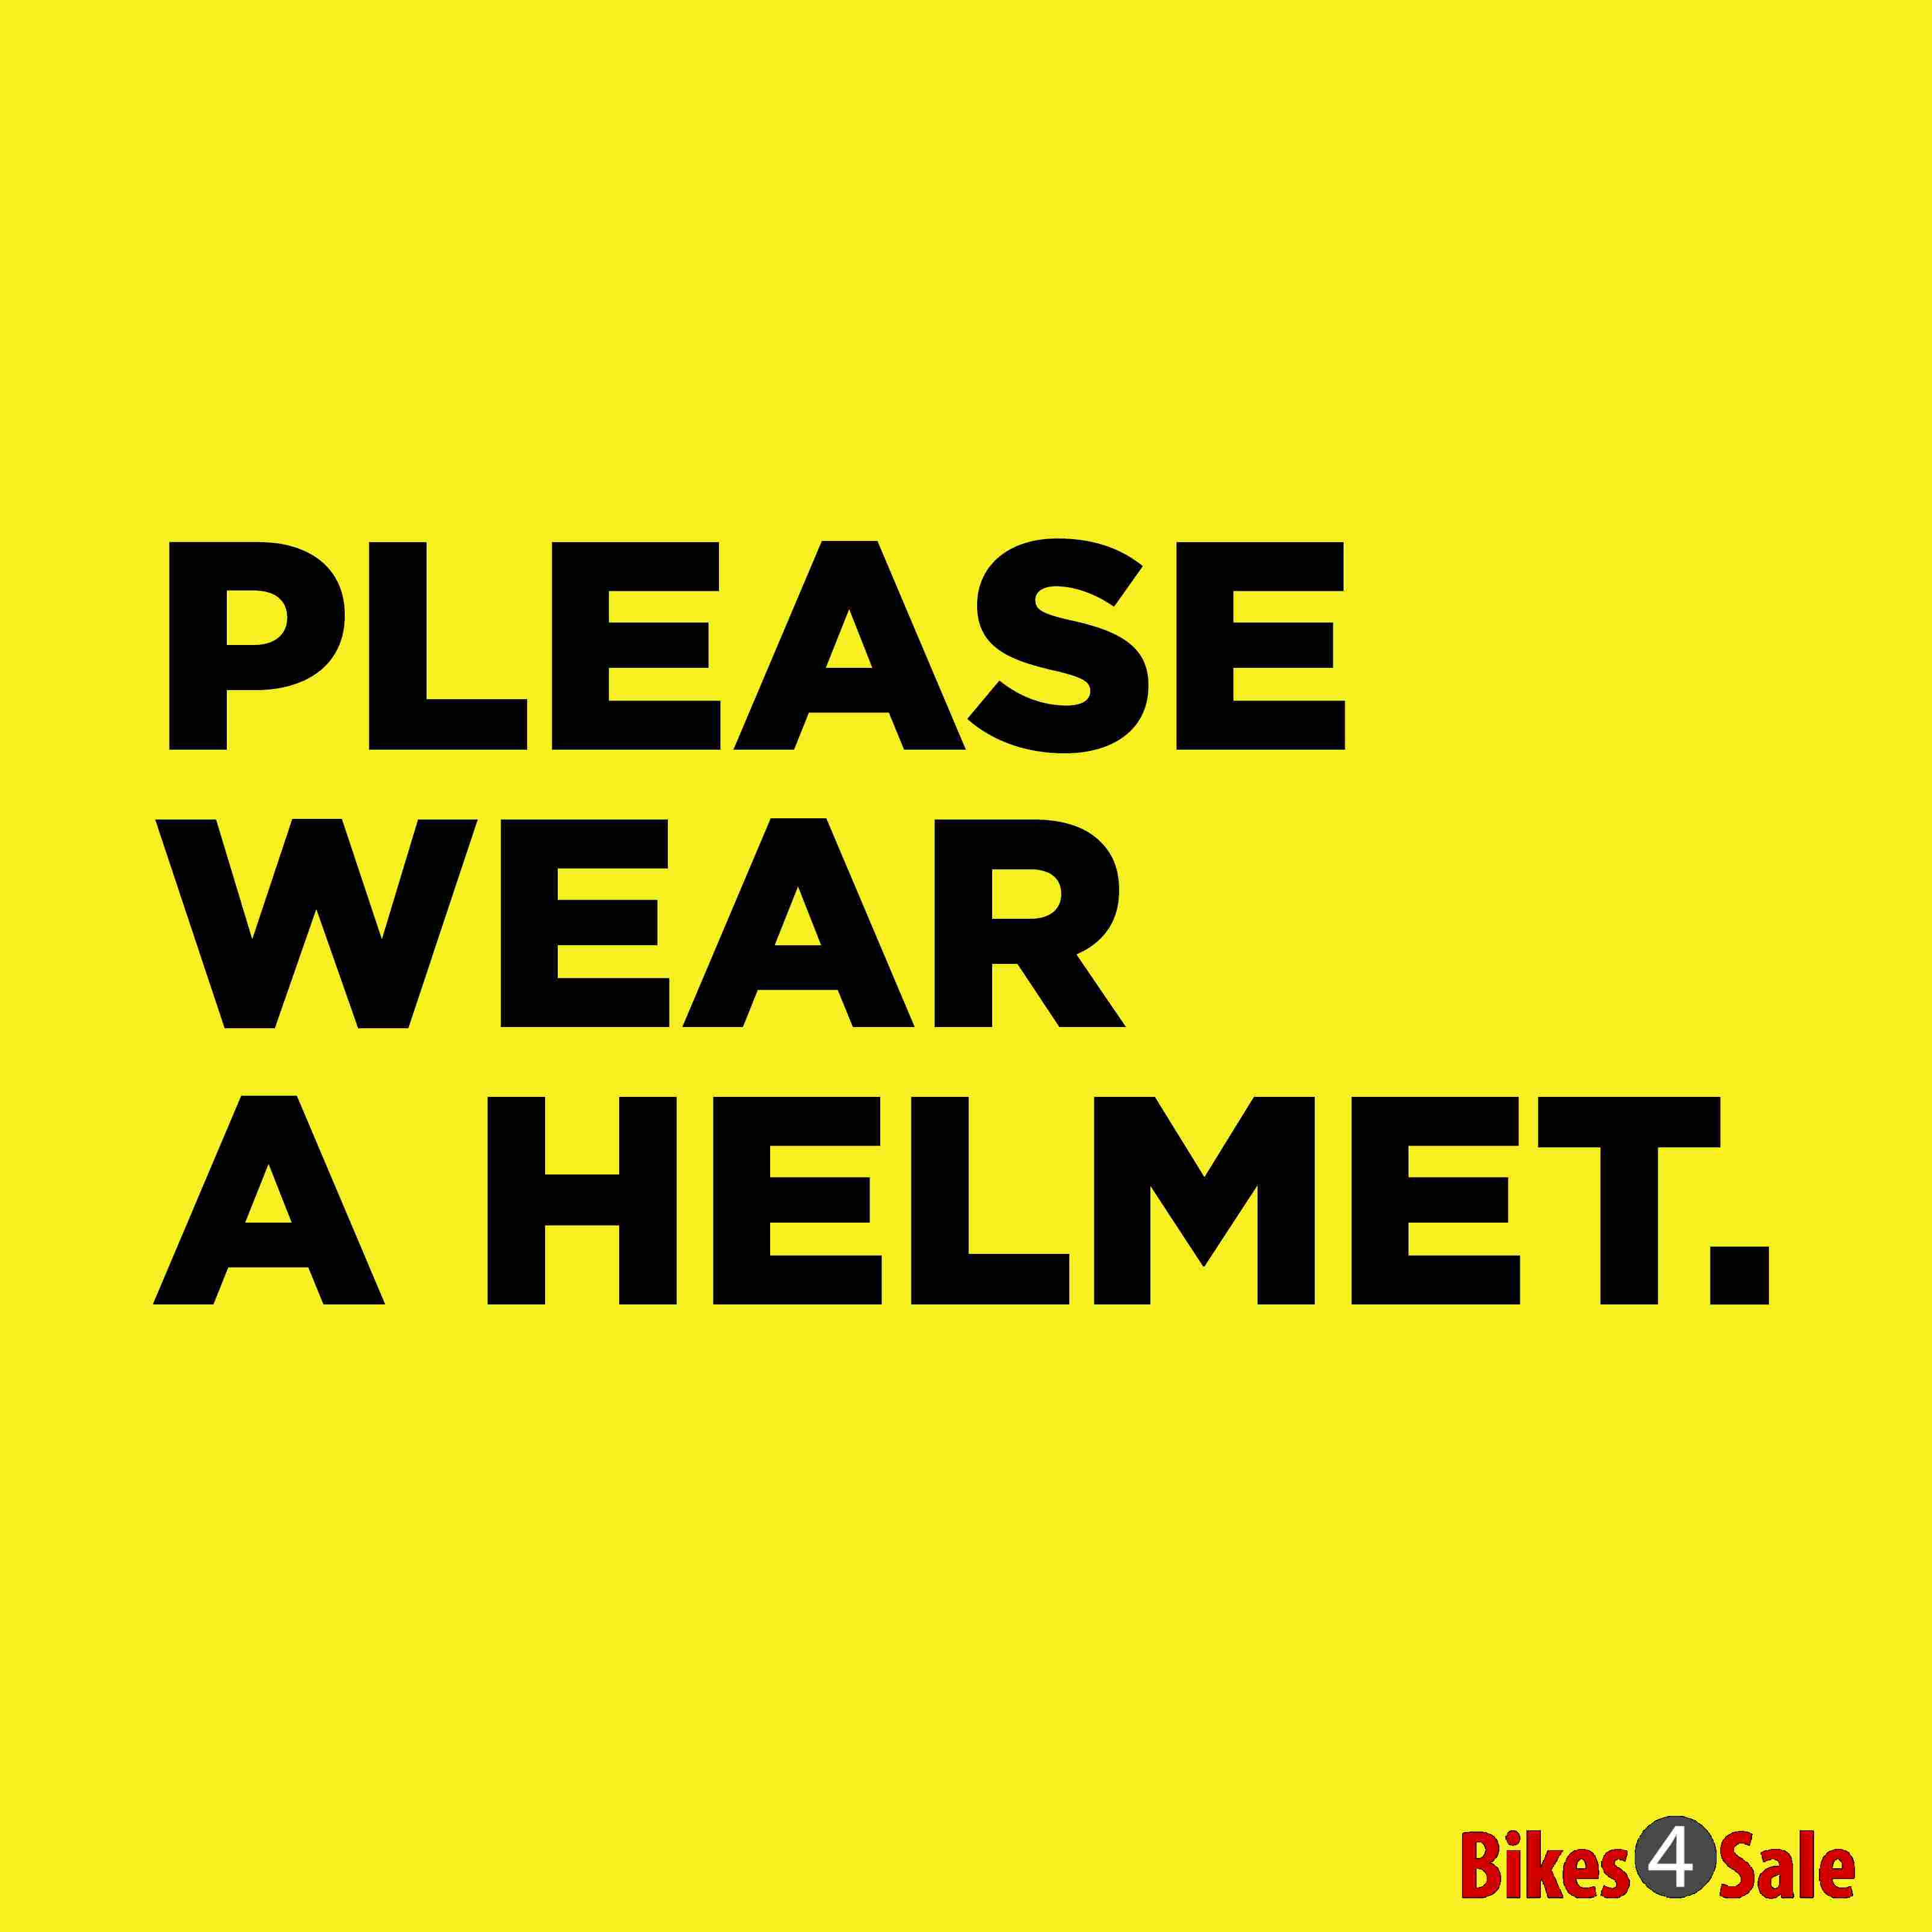 Please Wear Helmet